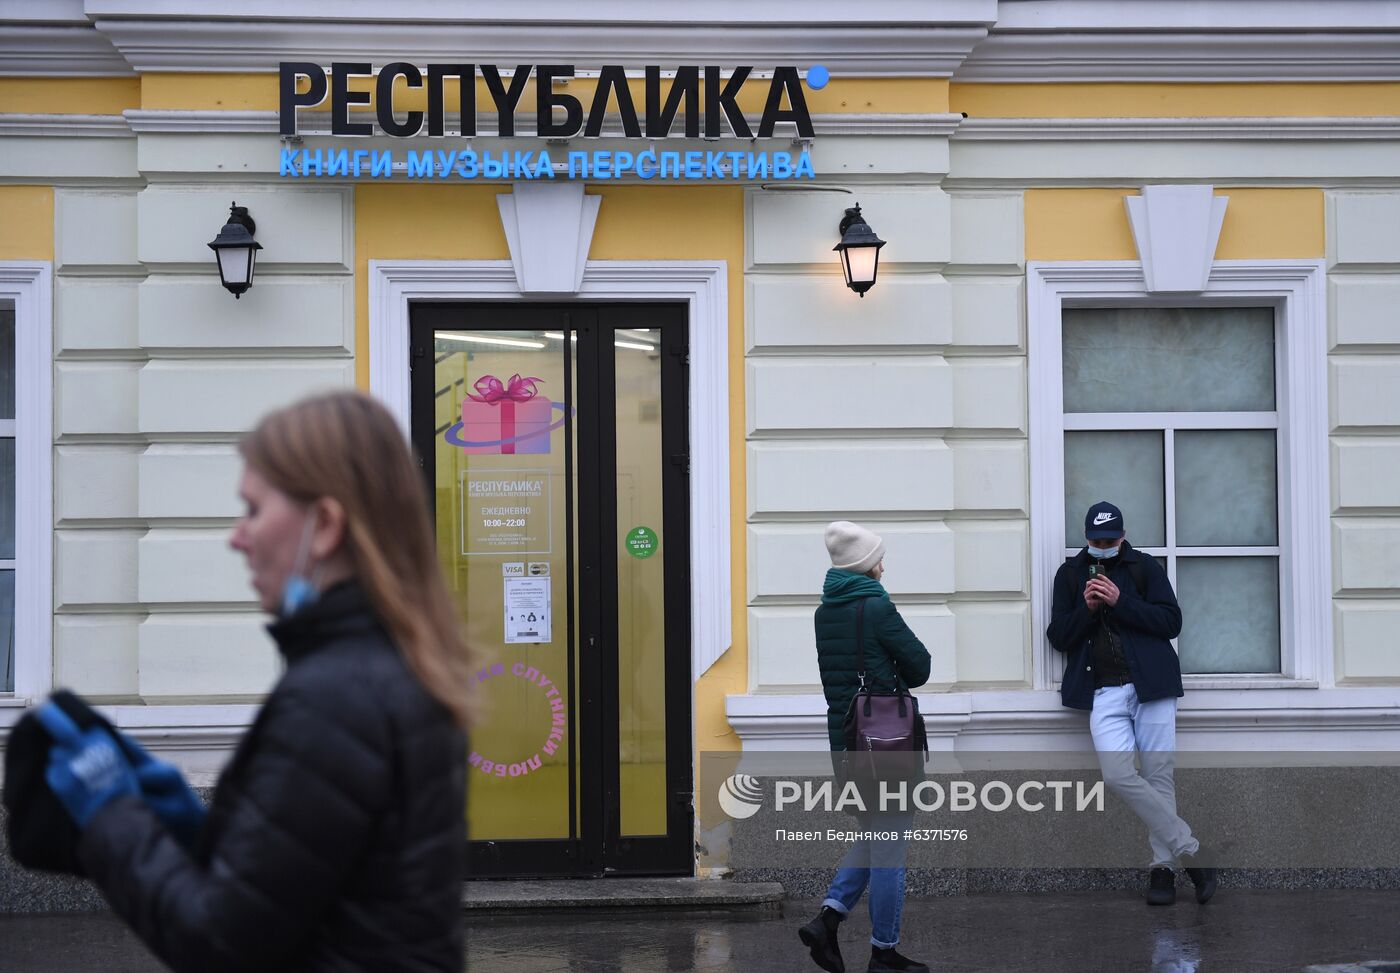 Сеть книжных магазинов "Республика" объявлена банкротом из-за пандемии коронавируса